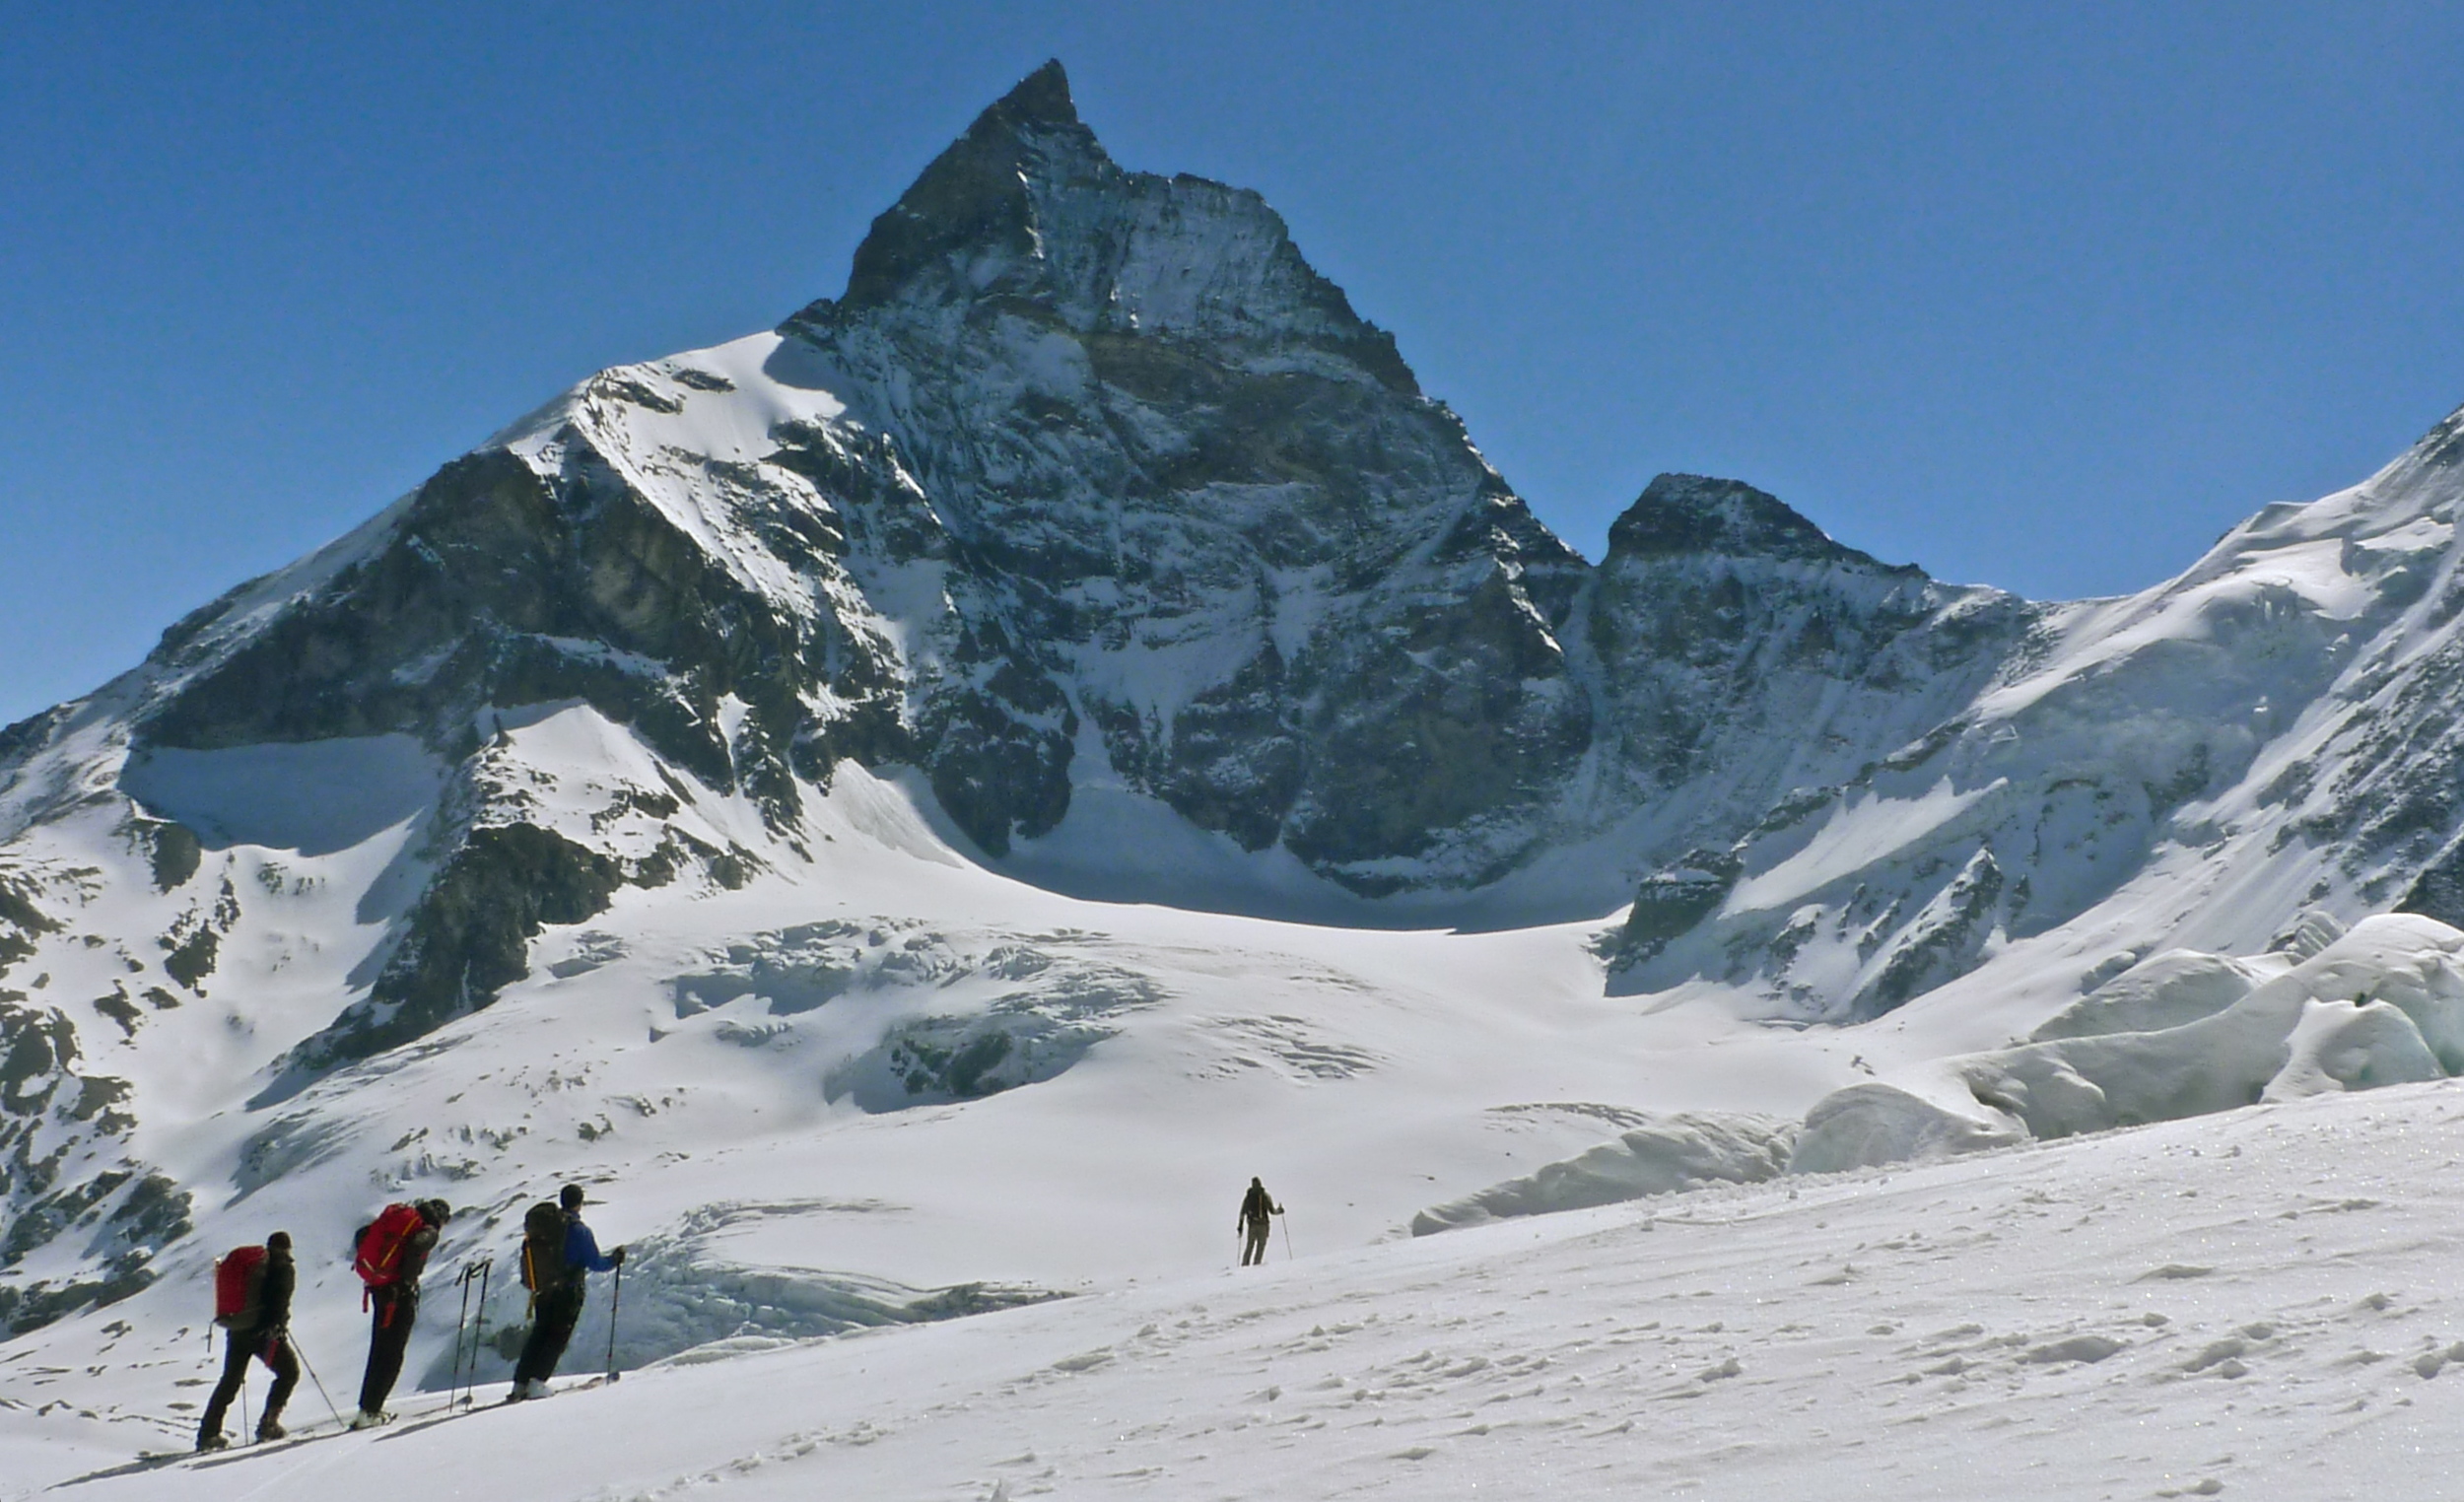 Day 6: The Matterhorn dominates the final run into Zermatt